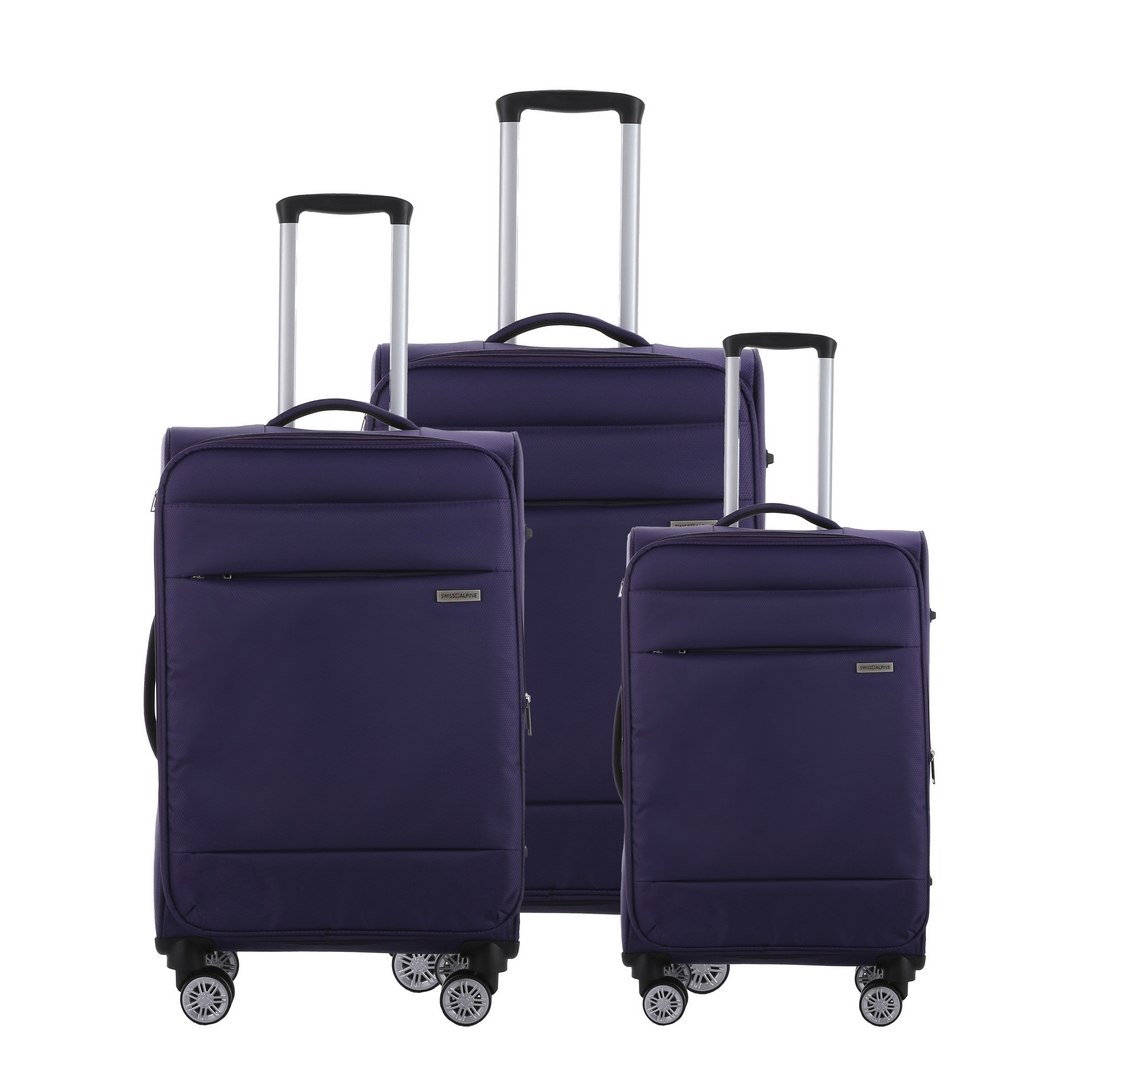 סט 3 מזוודות SWISS ALPINE בד קלות וסופר איכותיות - צבע סגול כהה